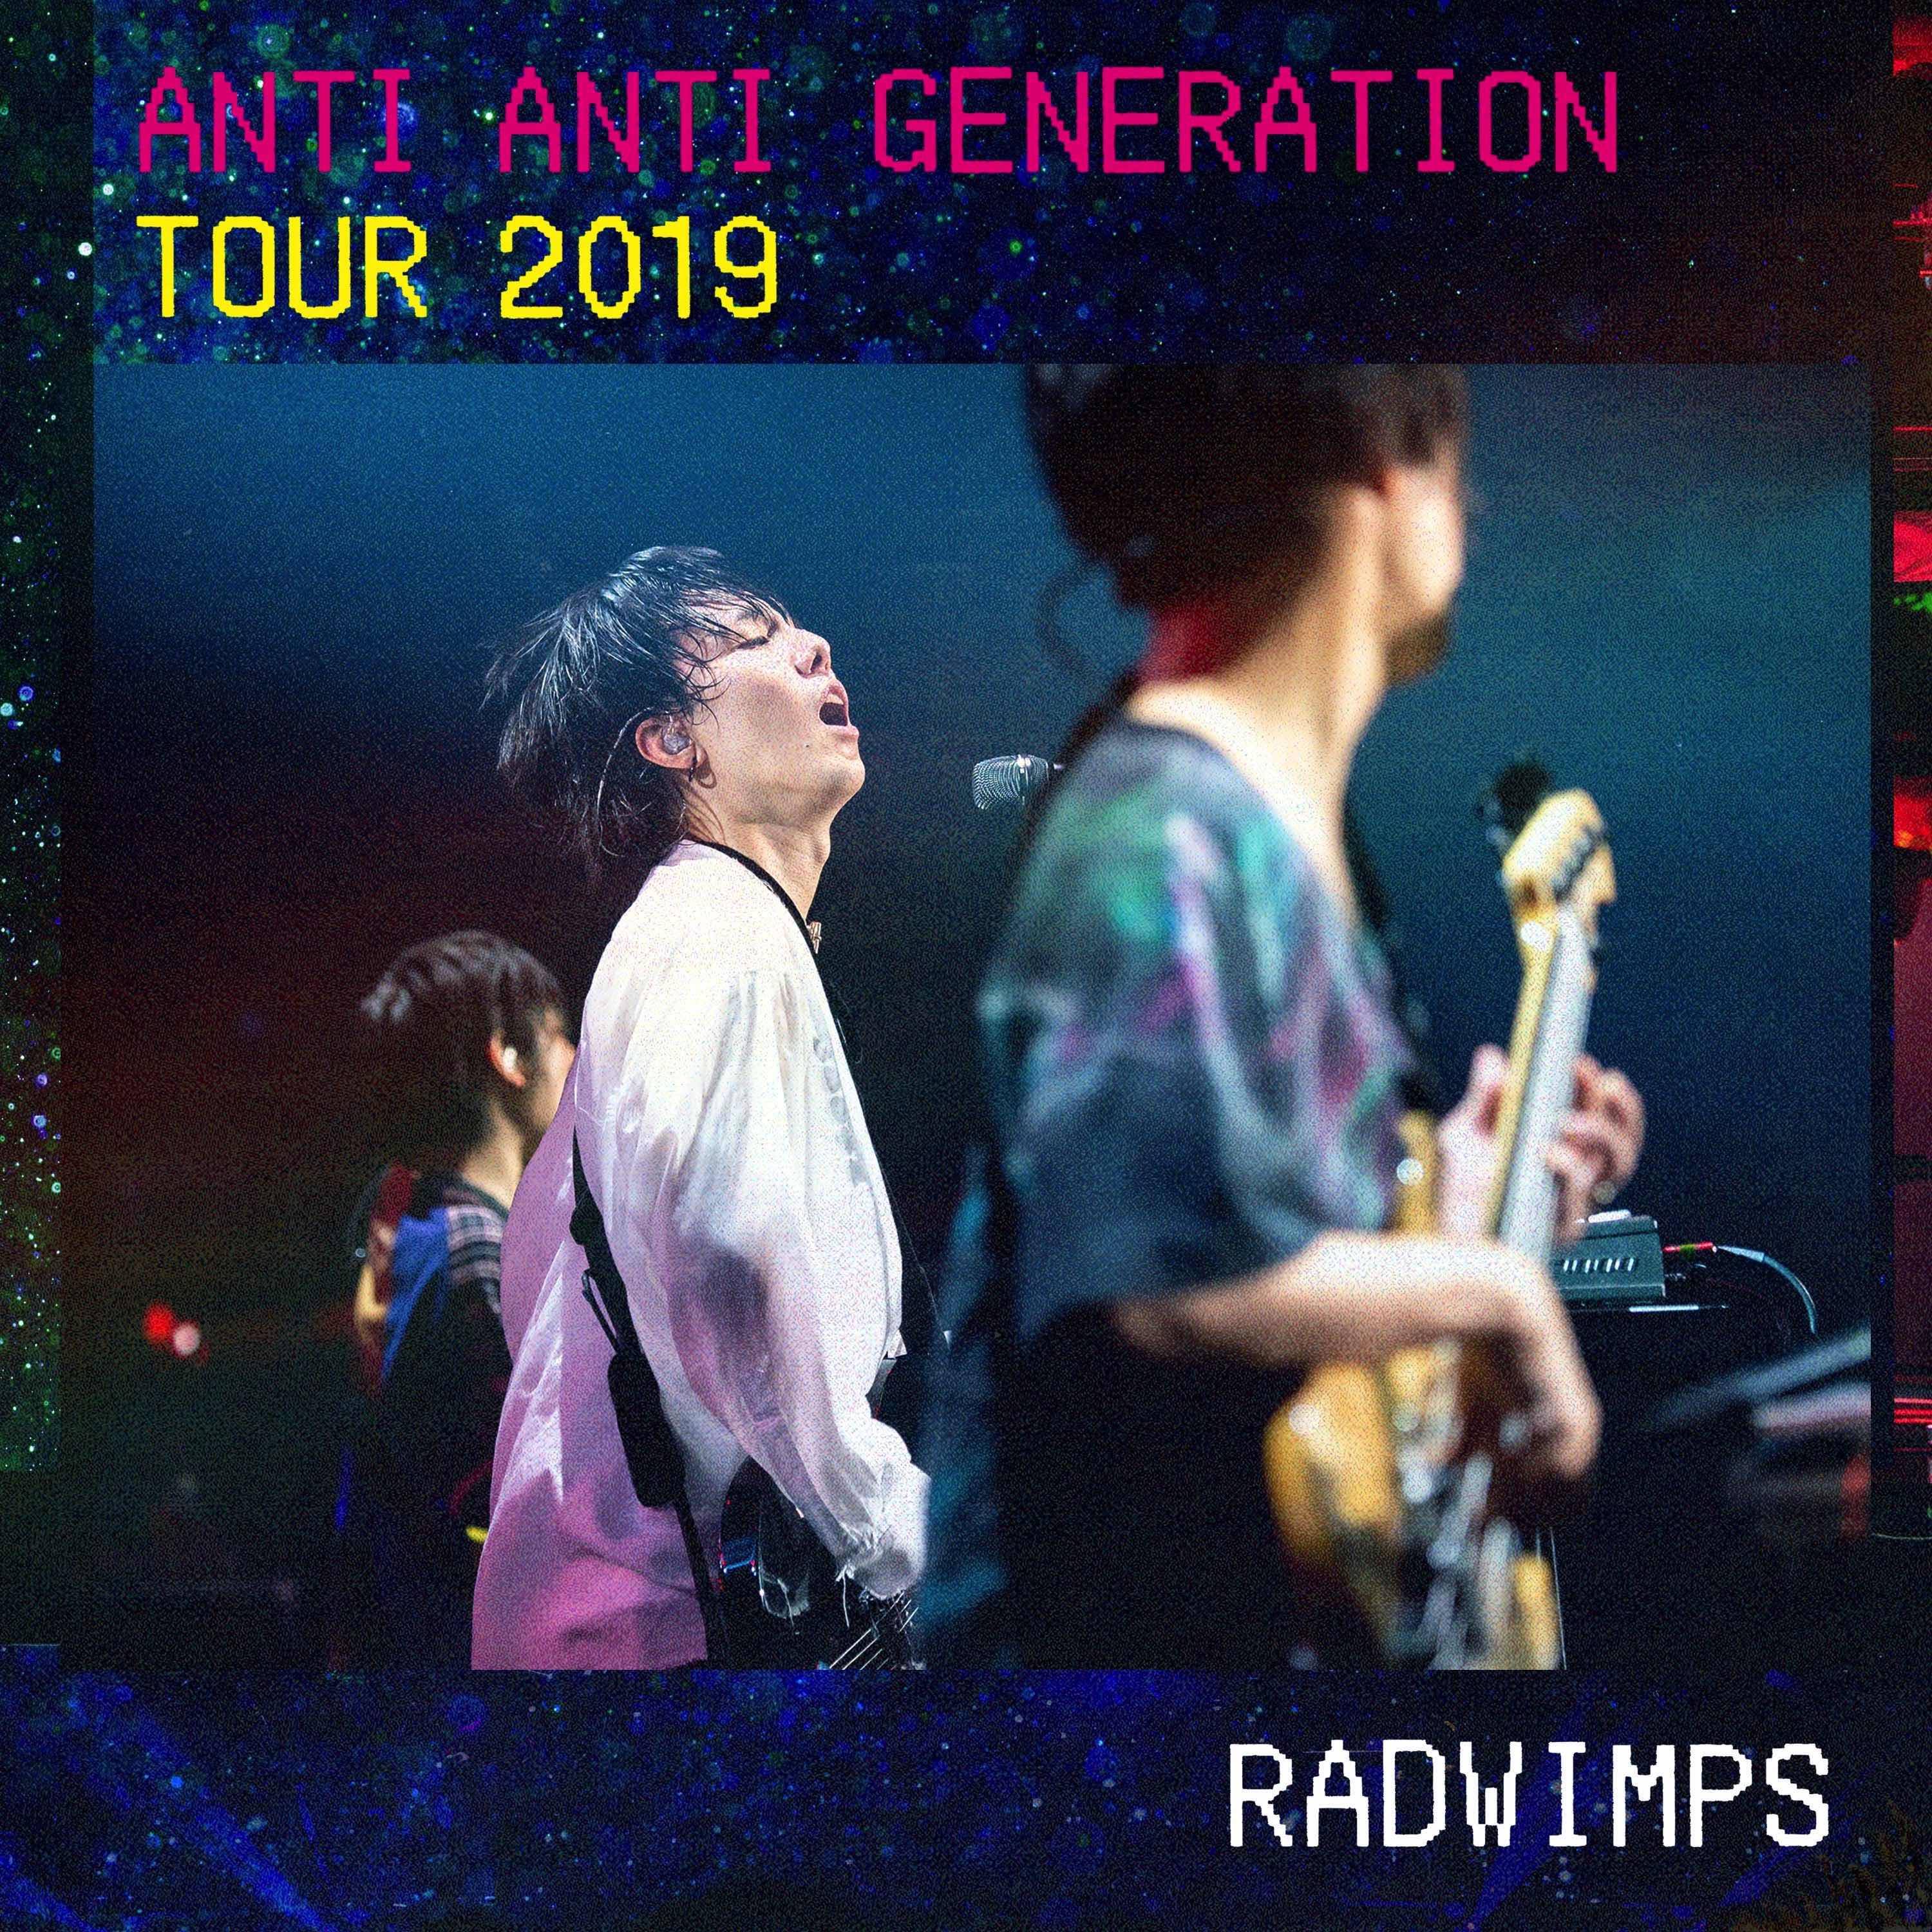 音楽 Radwimps 横浜アリーナ公演のライブ映像をapple Music限定で配信